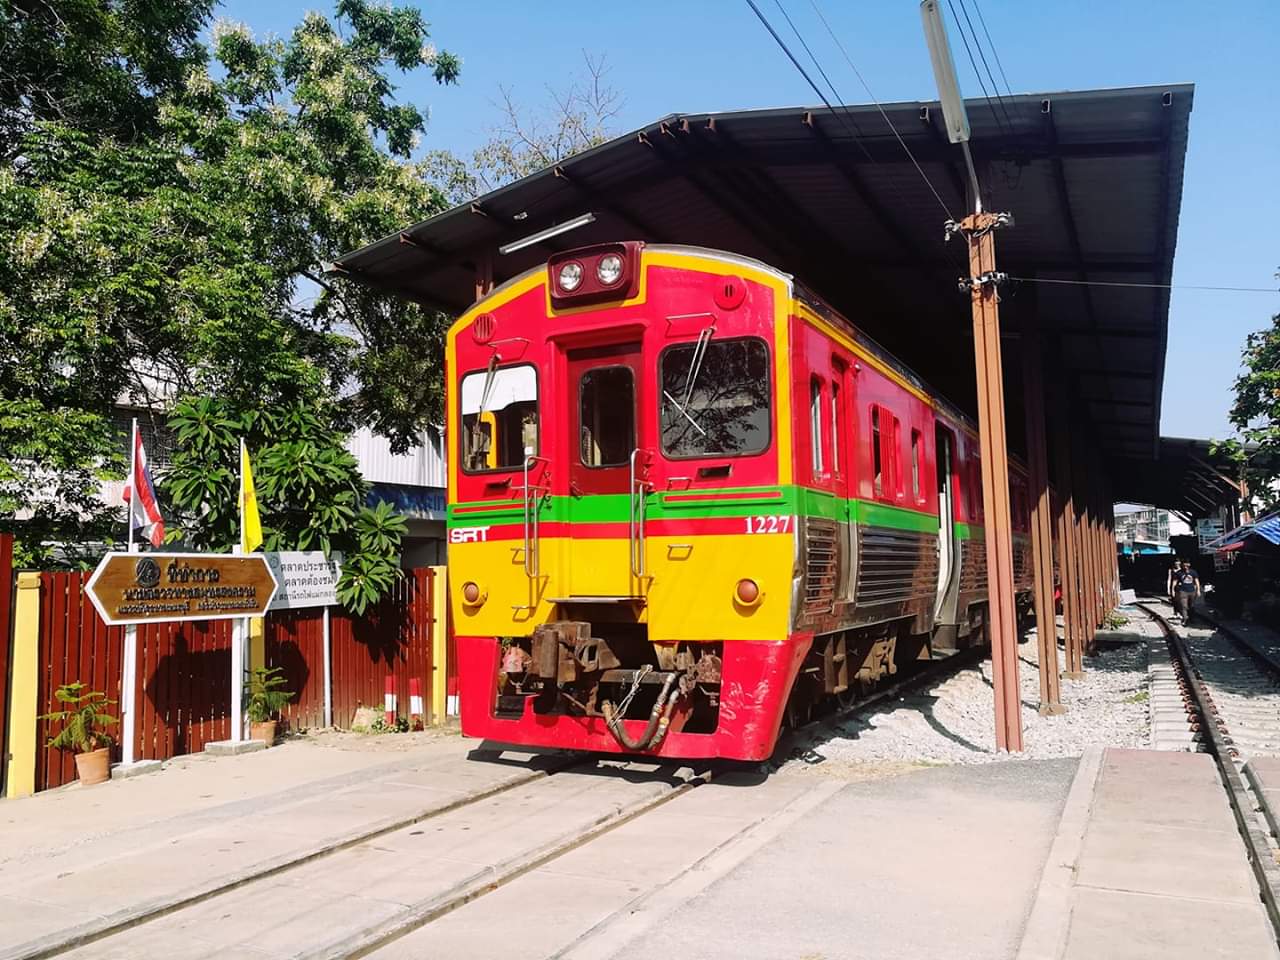 ทำไมรถไฟสายเเม่กลองถึงทำสีลายธงชาติพม่าครับ Pantip